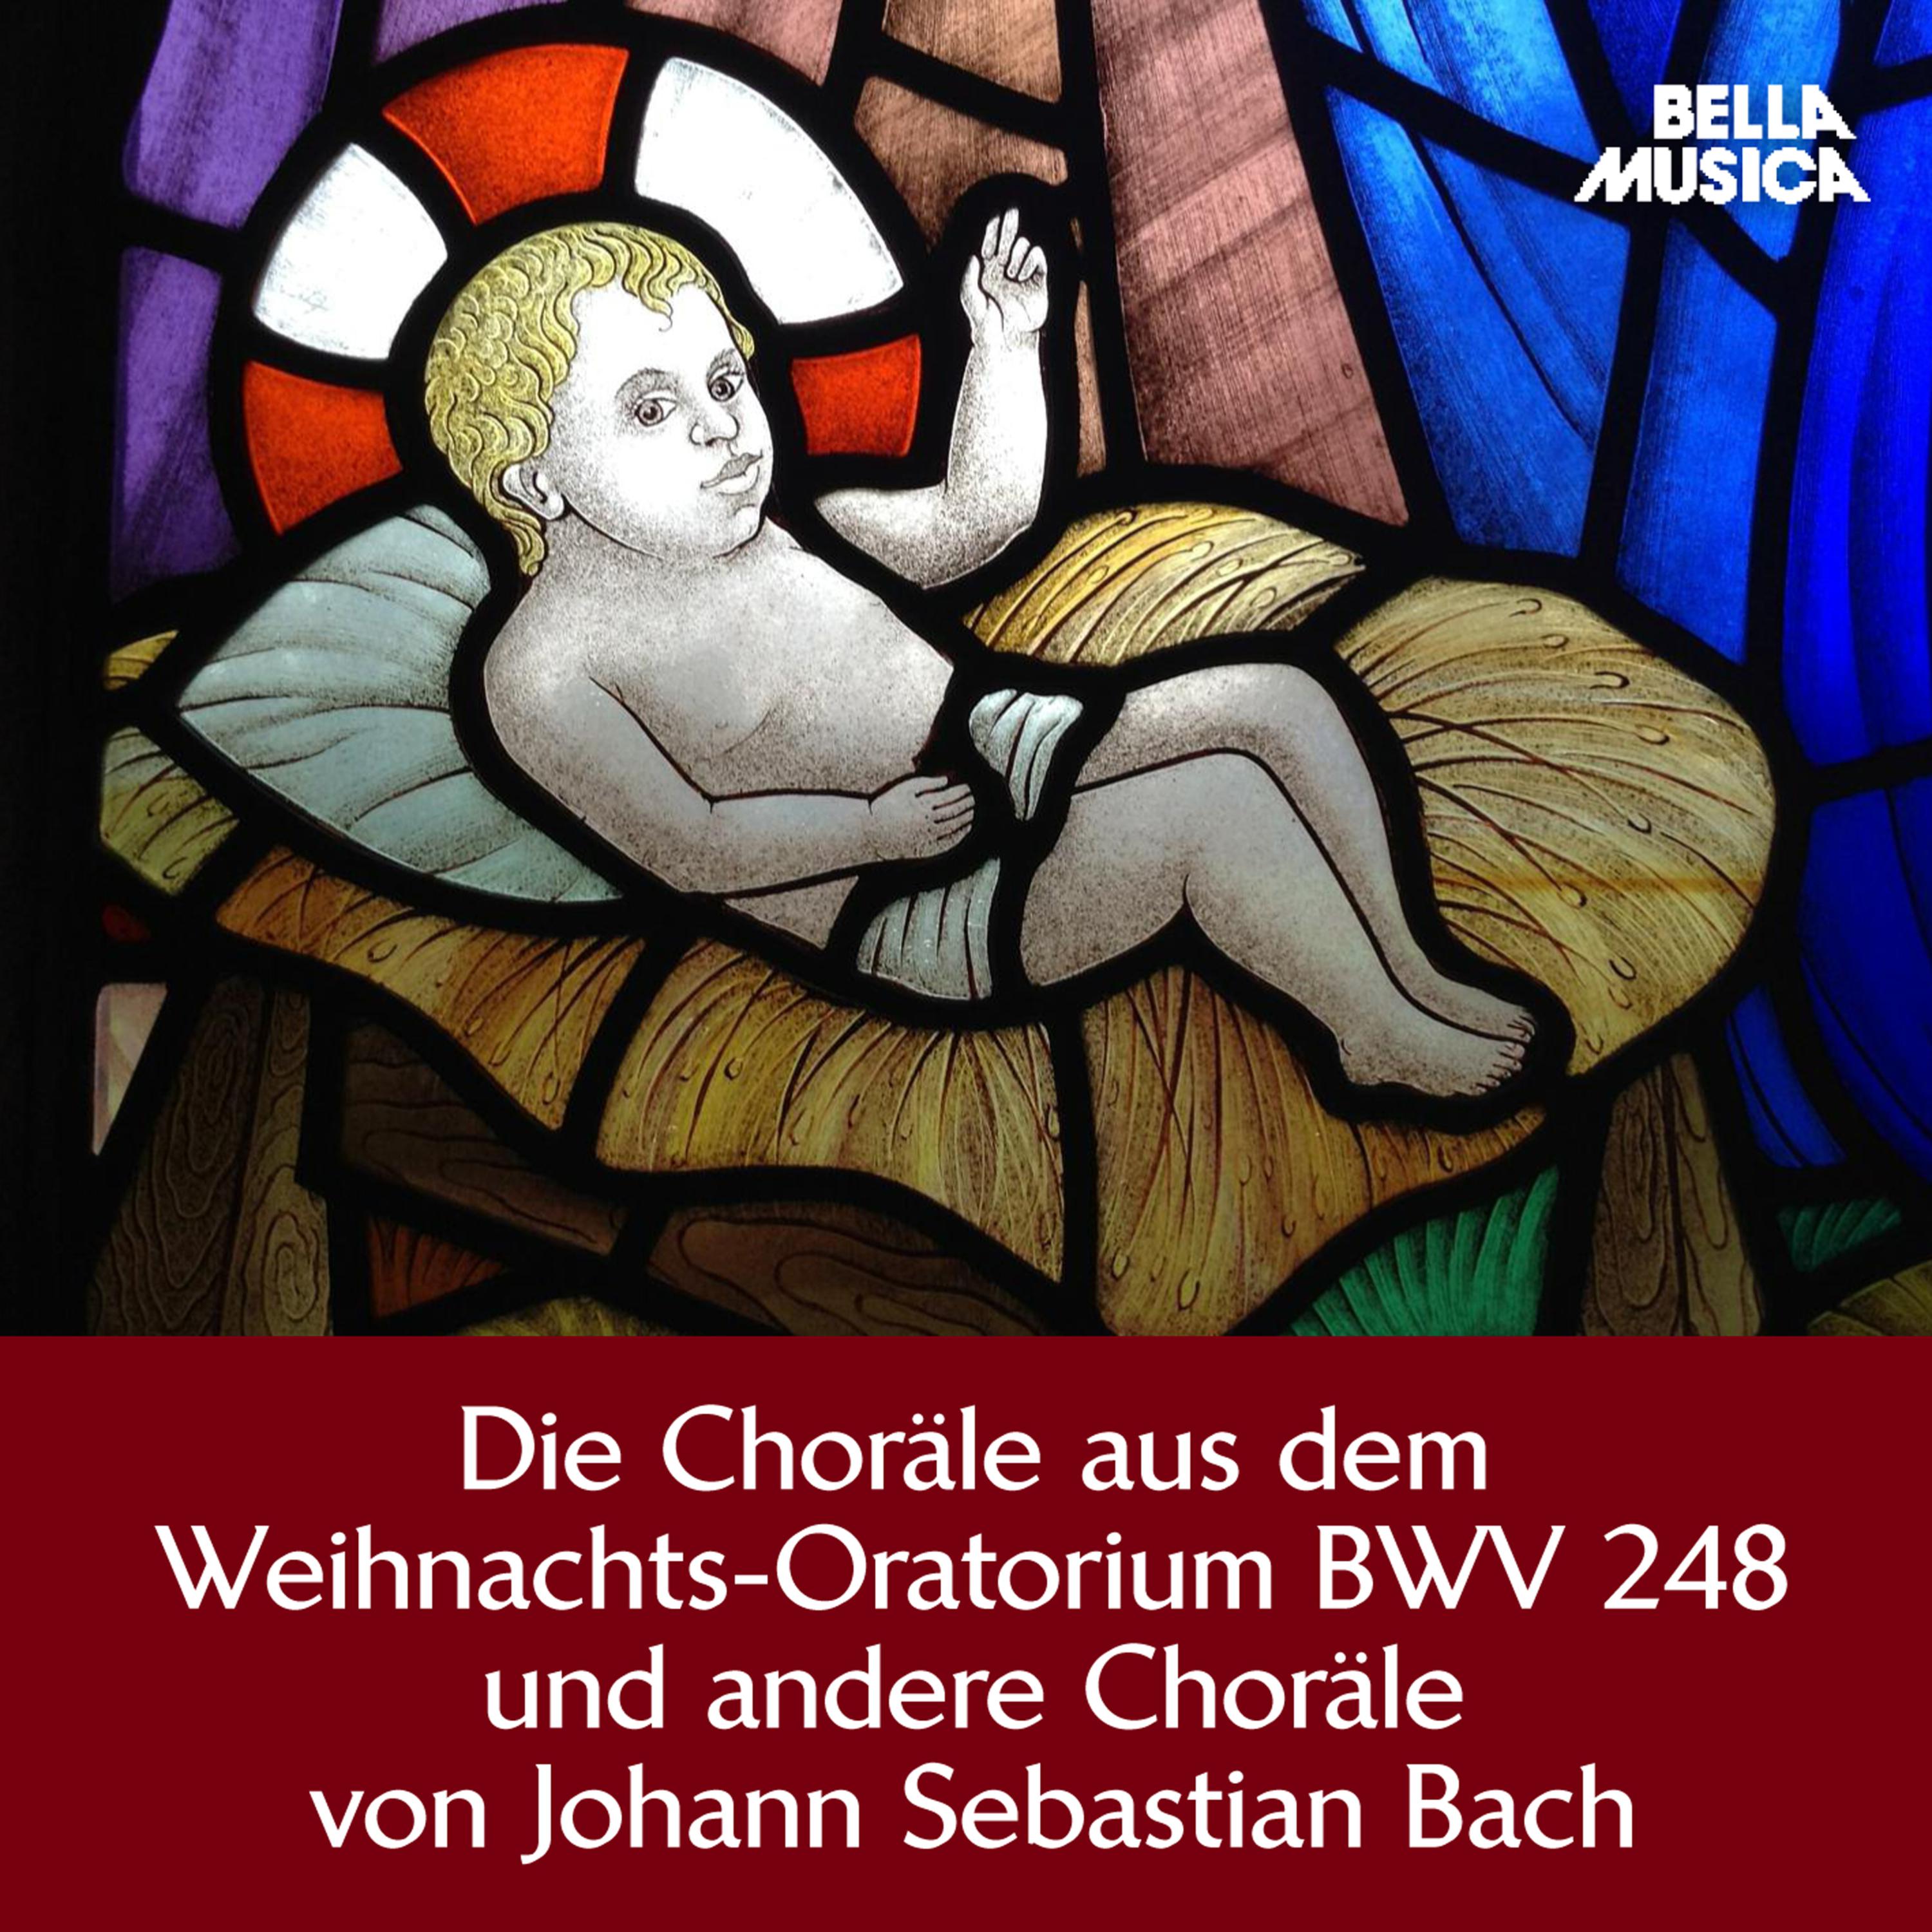 Weihnachts-Oratorium, BWV 248, Teil 6, Am Feste der Offenbarung Christi: Ich steh an deiner Krippen hier